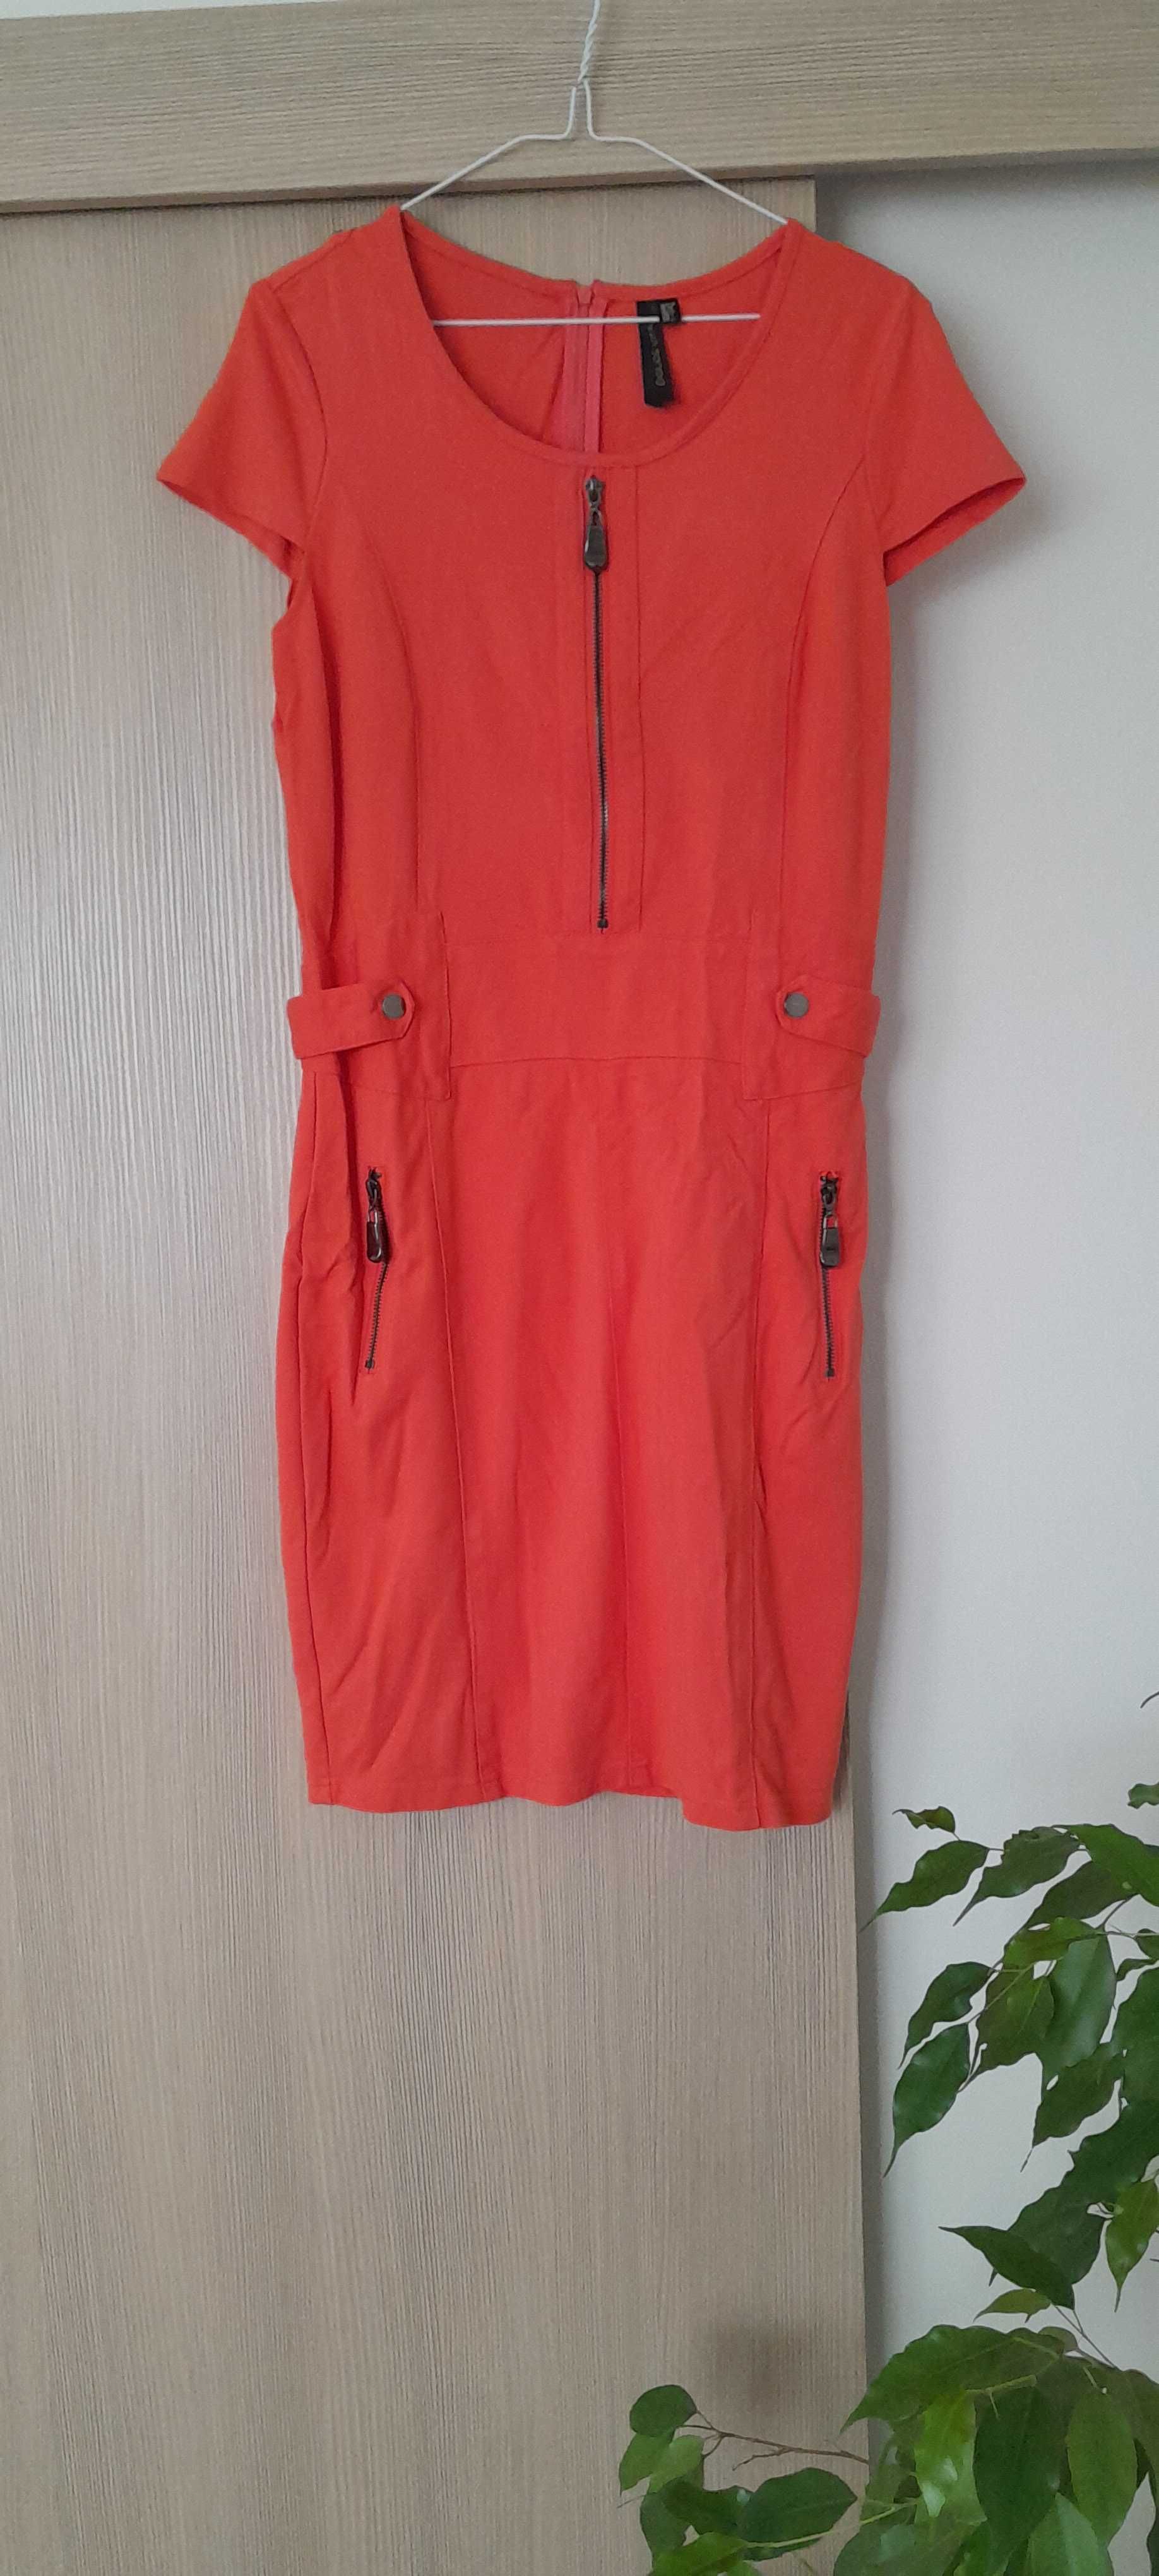 Sukienka pomarańczowa zamki zipy 38